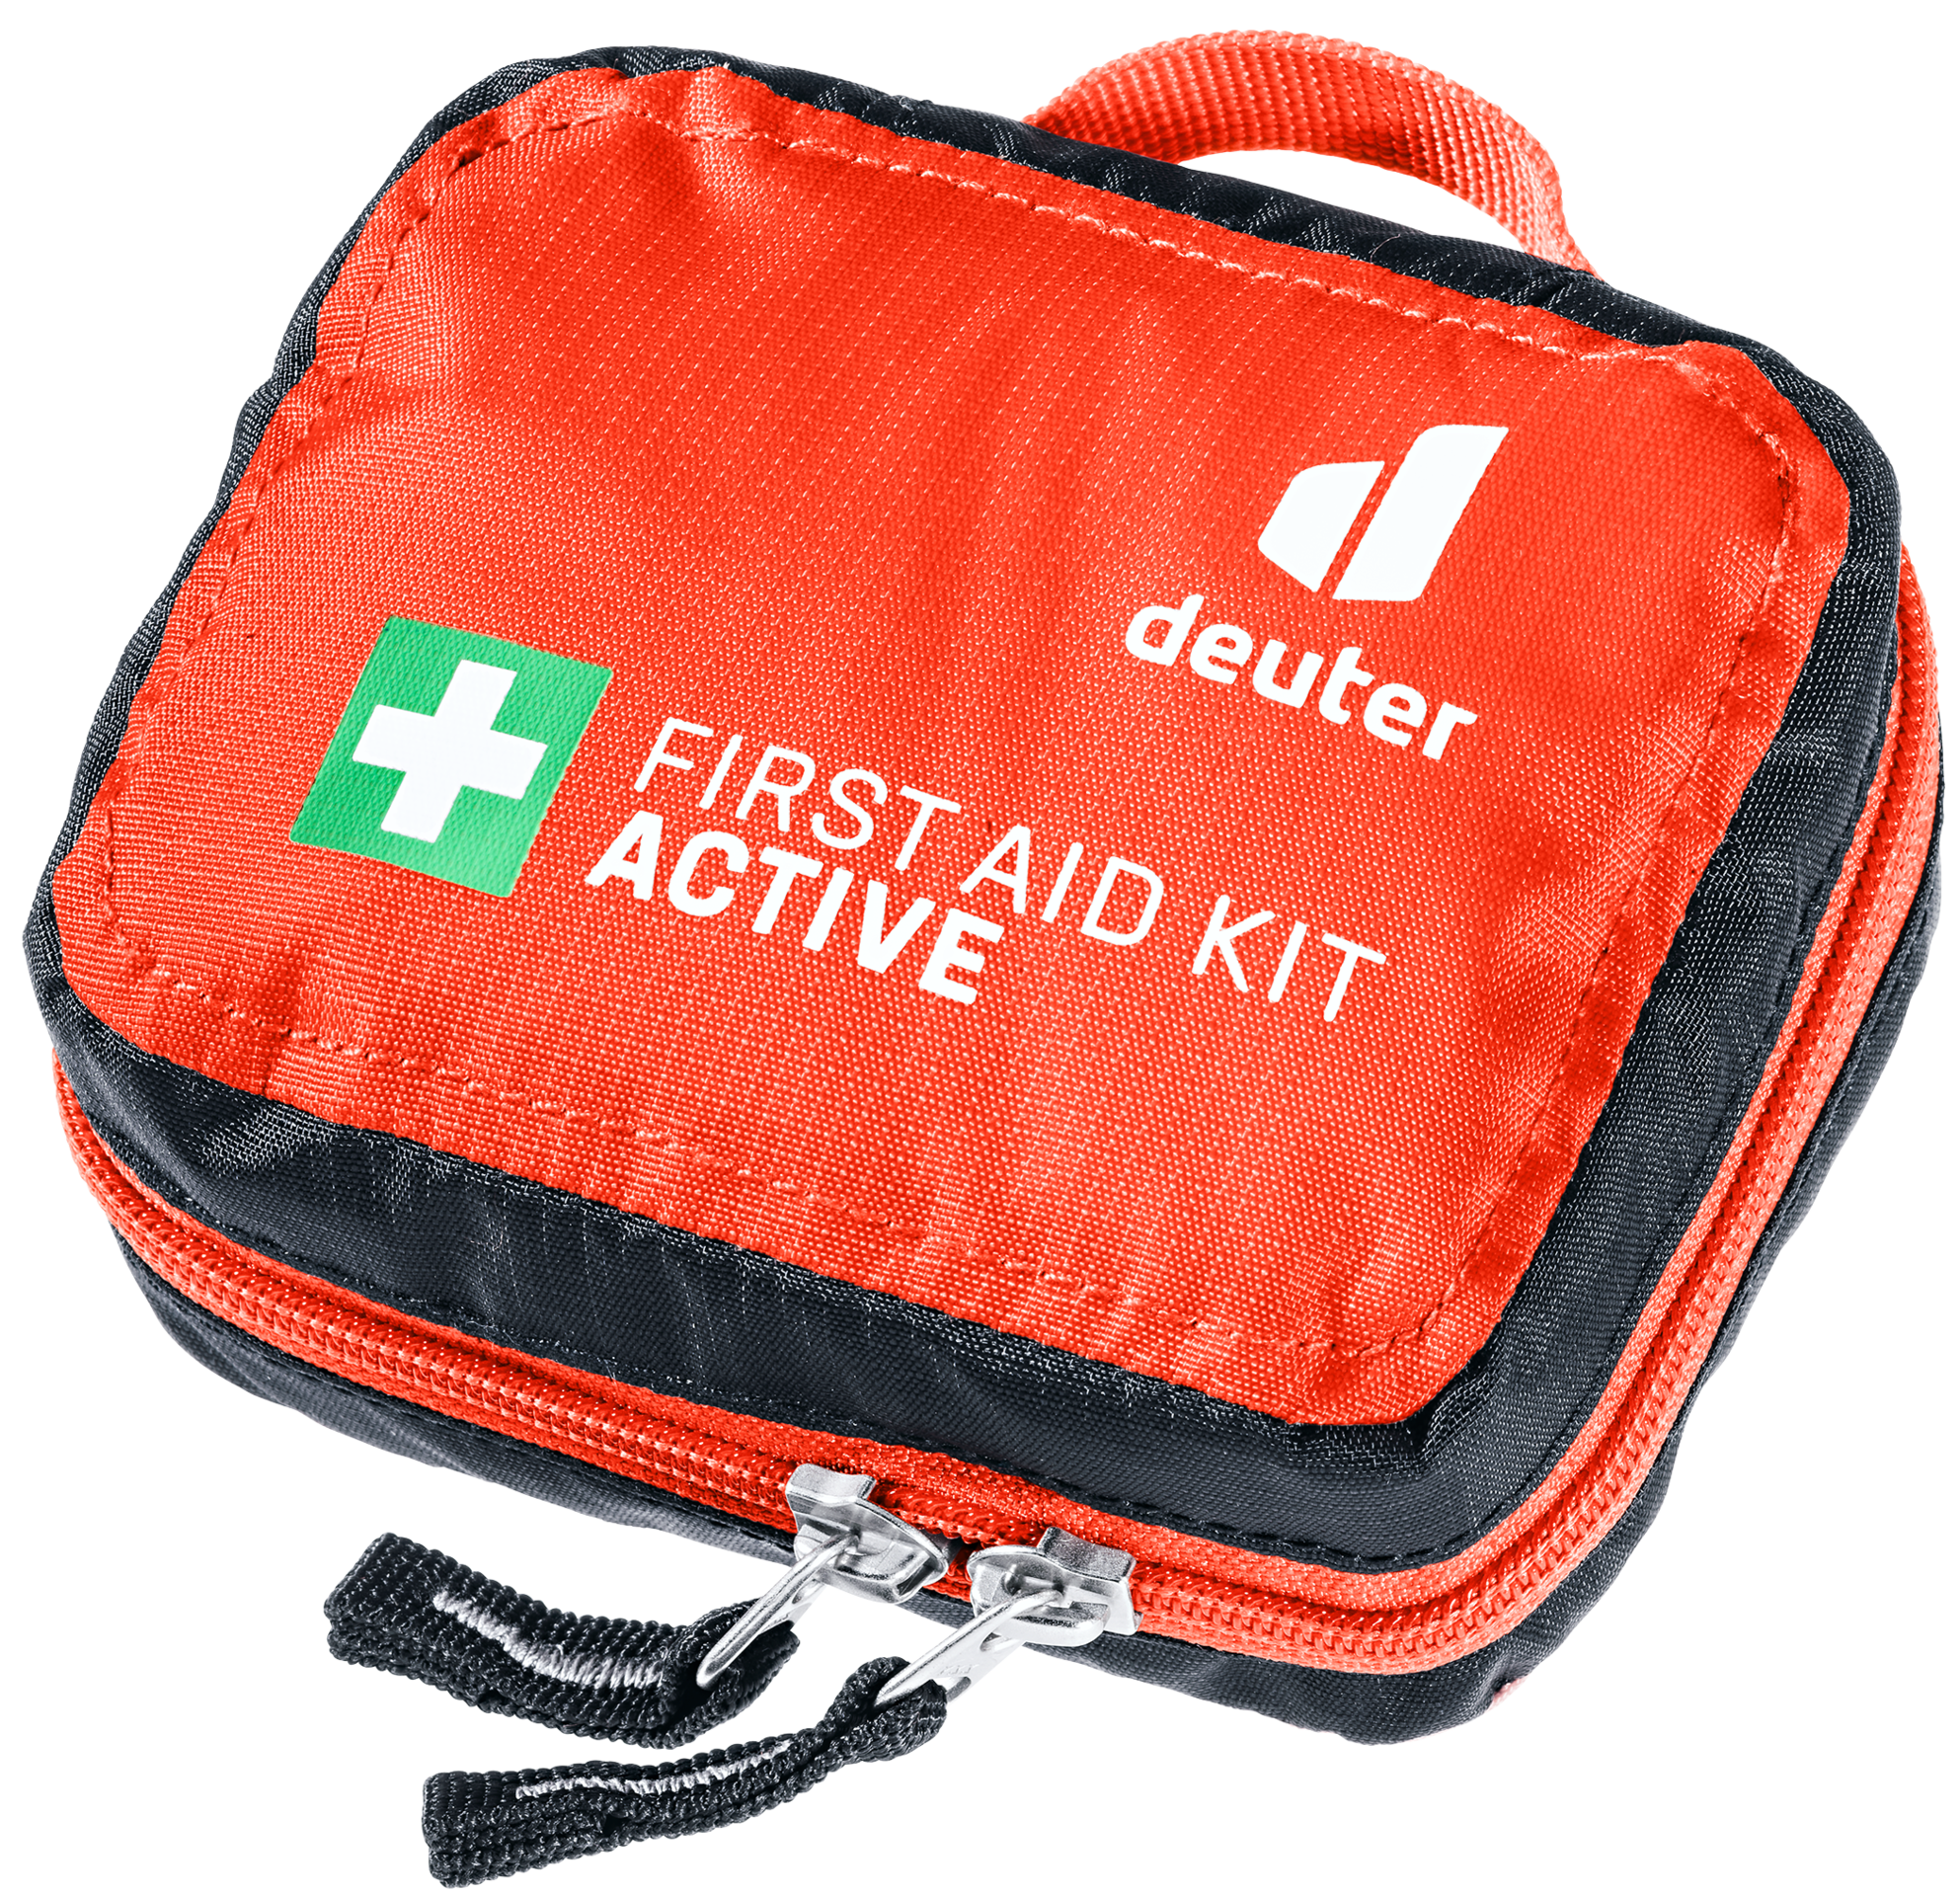 Erste-Hilfe-Set din Notfall medizinische Erste-Hilfe-Tasche Auto  Erste-Hilfe-Kit mit 31 emt